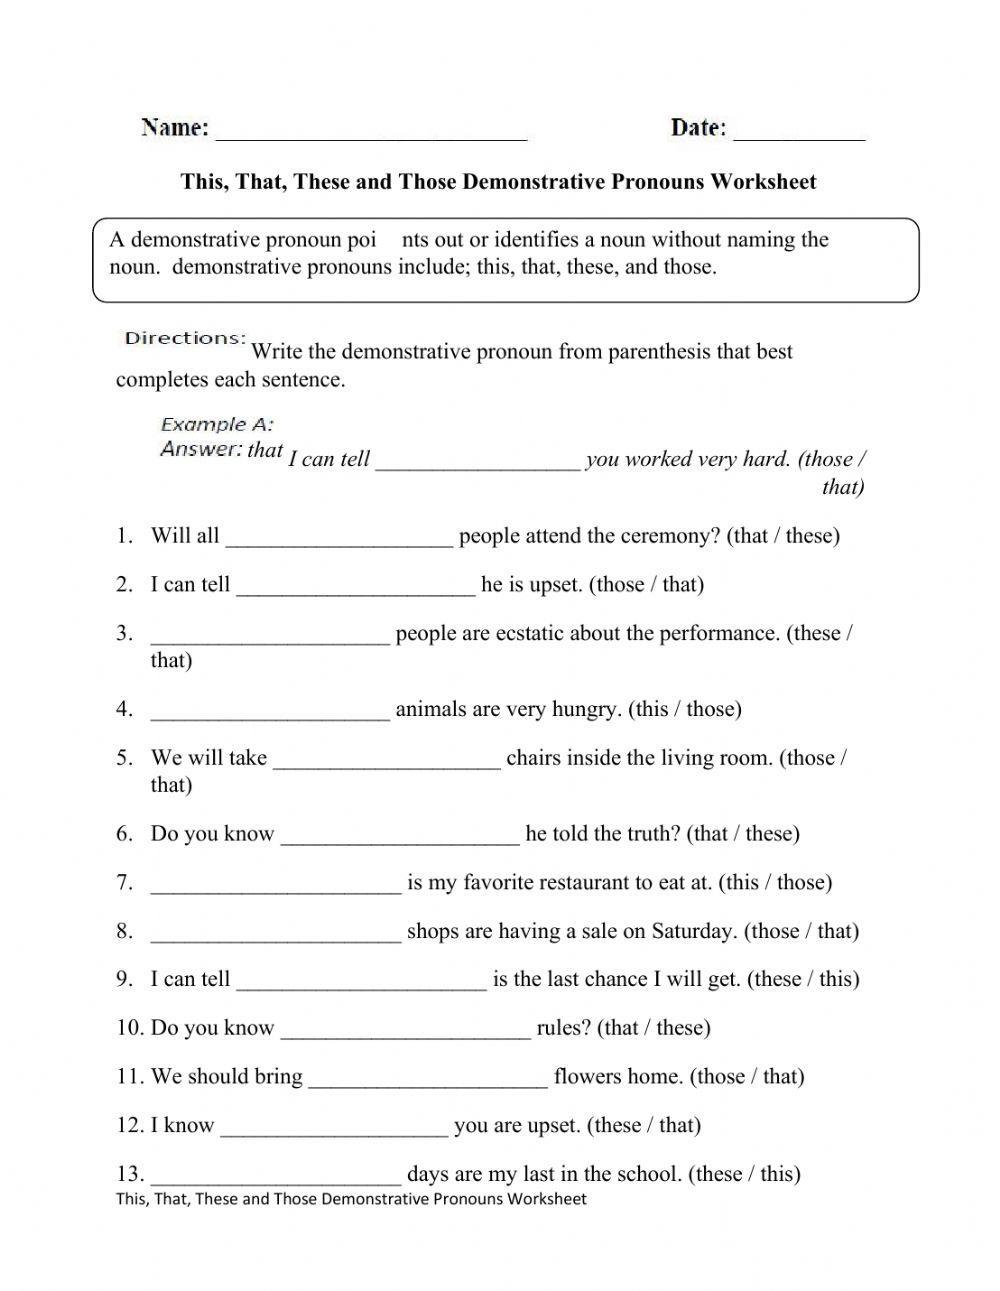 Worksheet On Demonstrative Pronouns For Grade 3